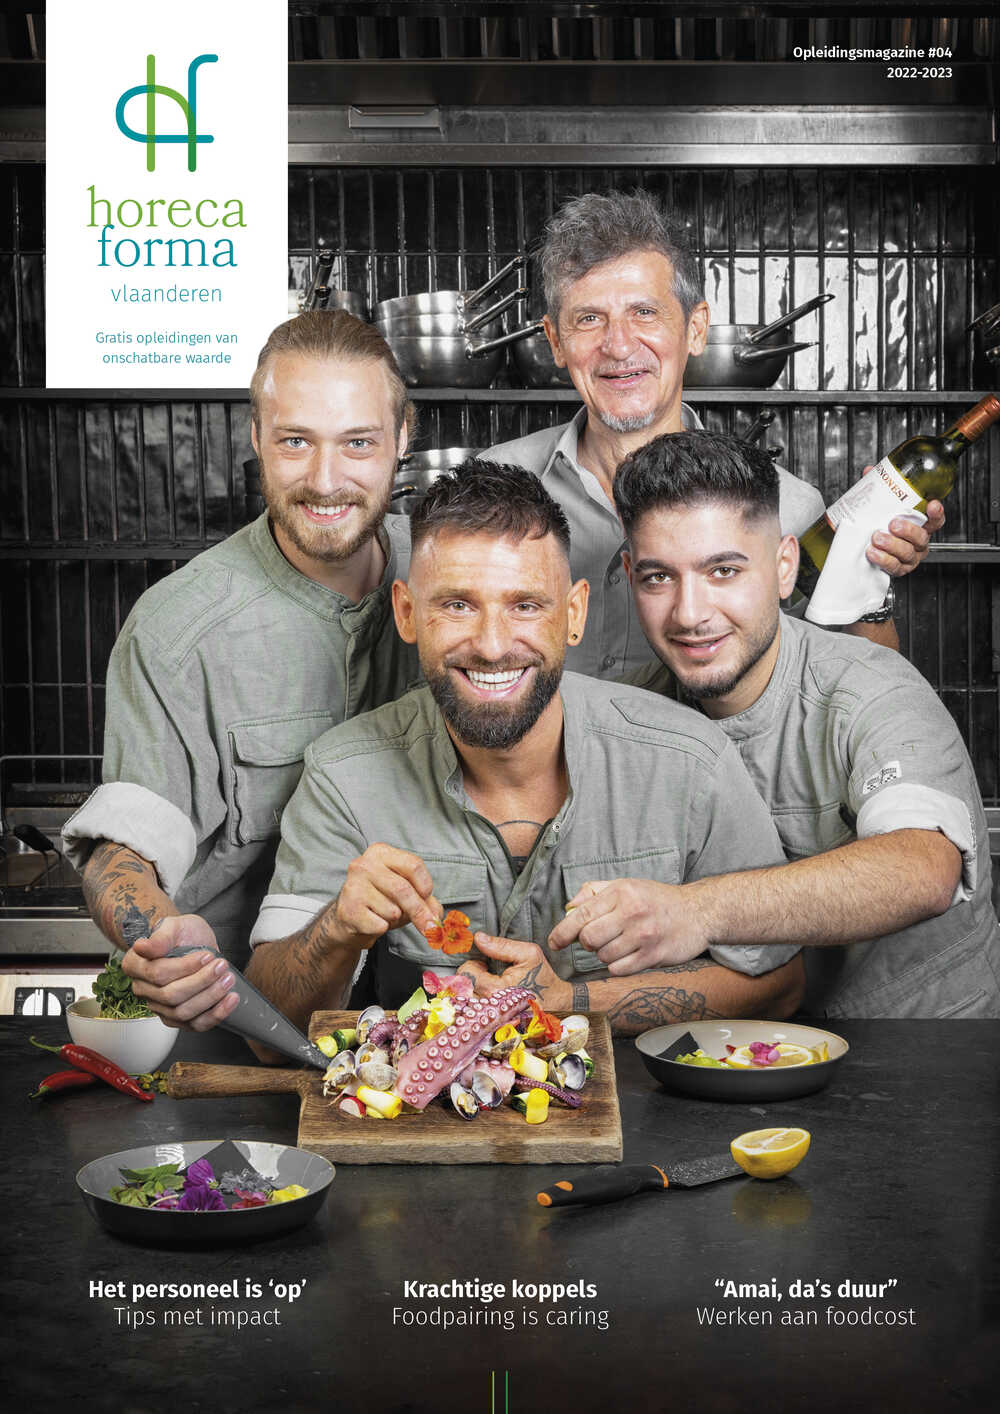 Horeca Forma opleidingsmagazine, oplage 90.000 exemplaren, verschijnt jaarlijks